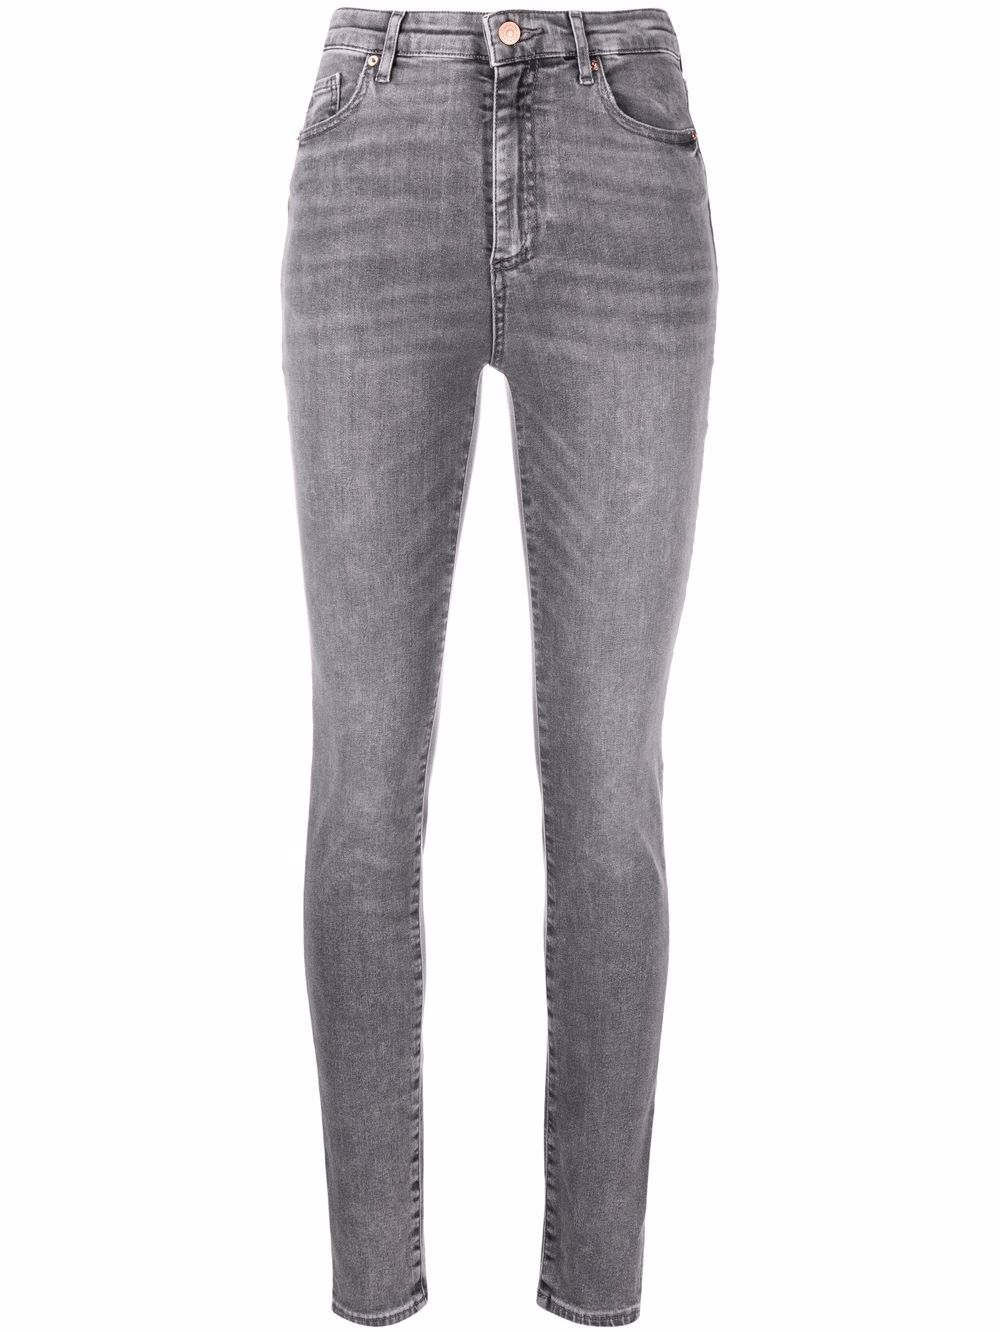 фото Armani exchange узкие джинсы с эффектом потертости